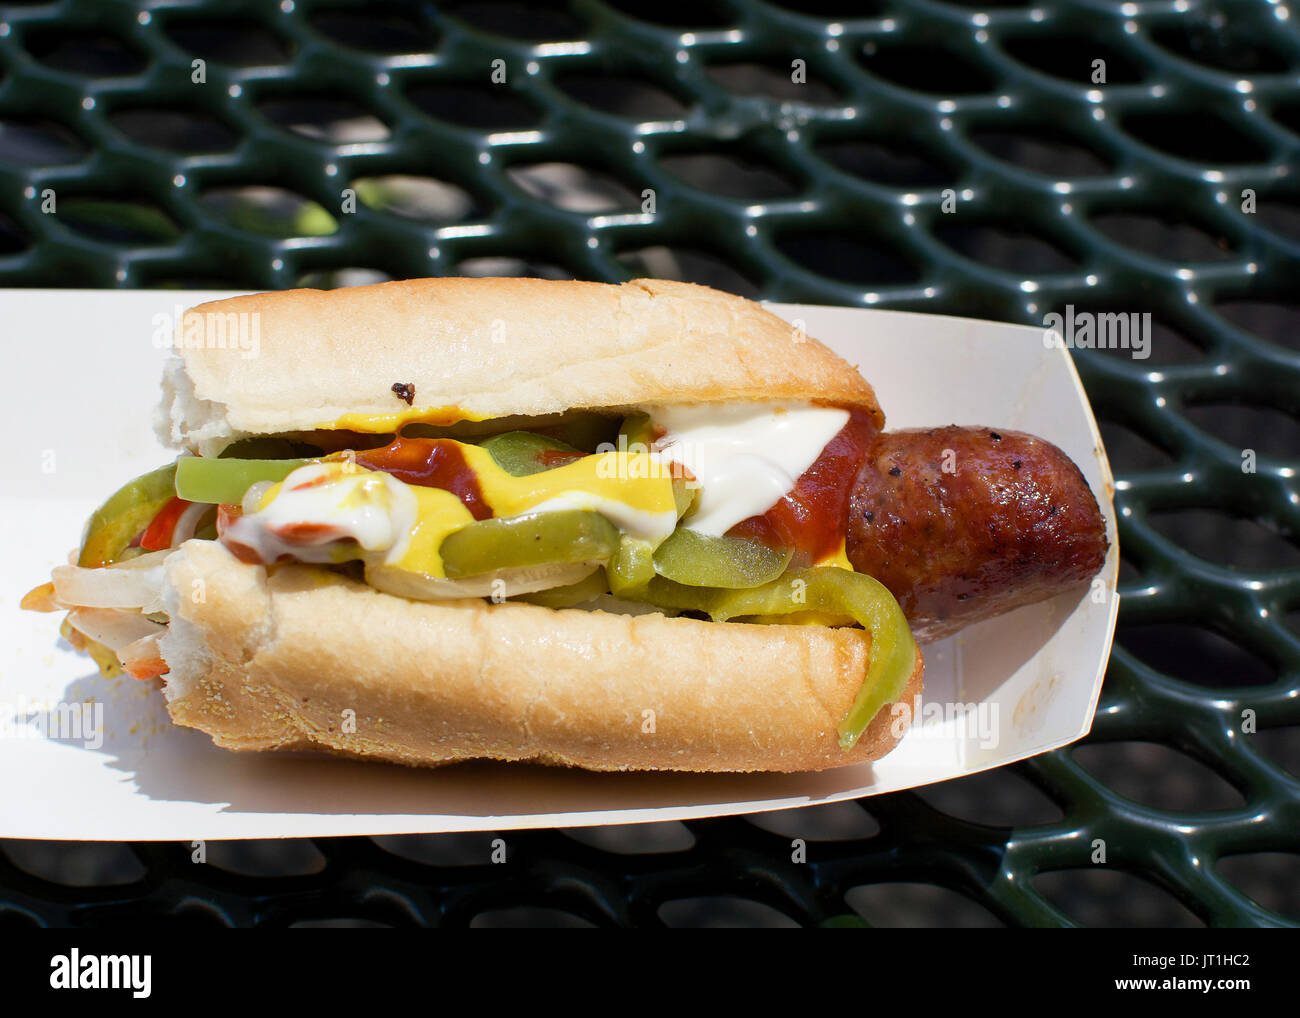 Die Hälfte gegessen Hot Dog mit Mayo, Paprika und Tomaten Sauce durchführen, auf Schwarz. Junk food Konzept. Stockfoto